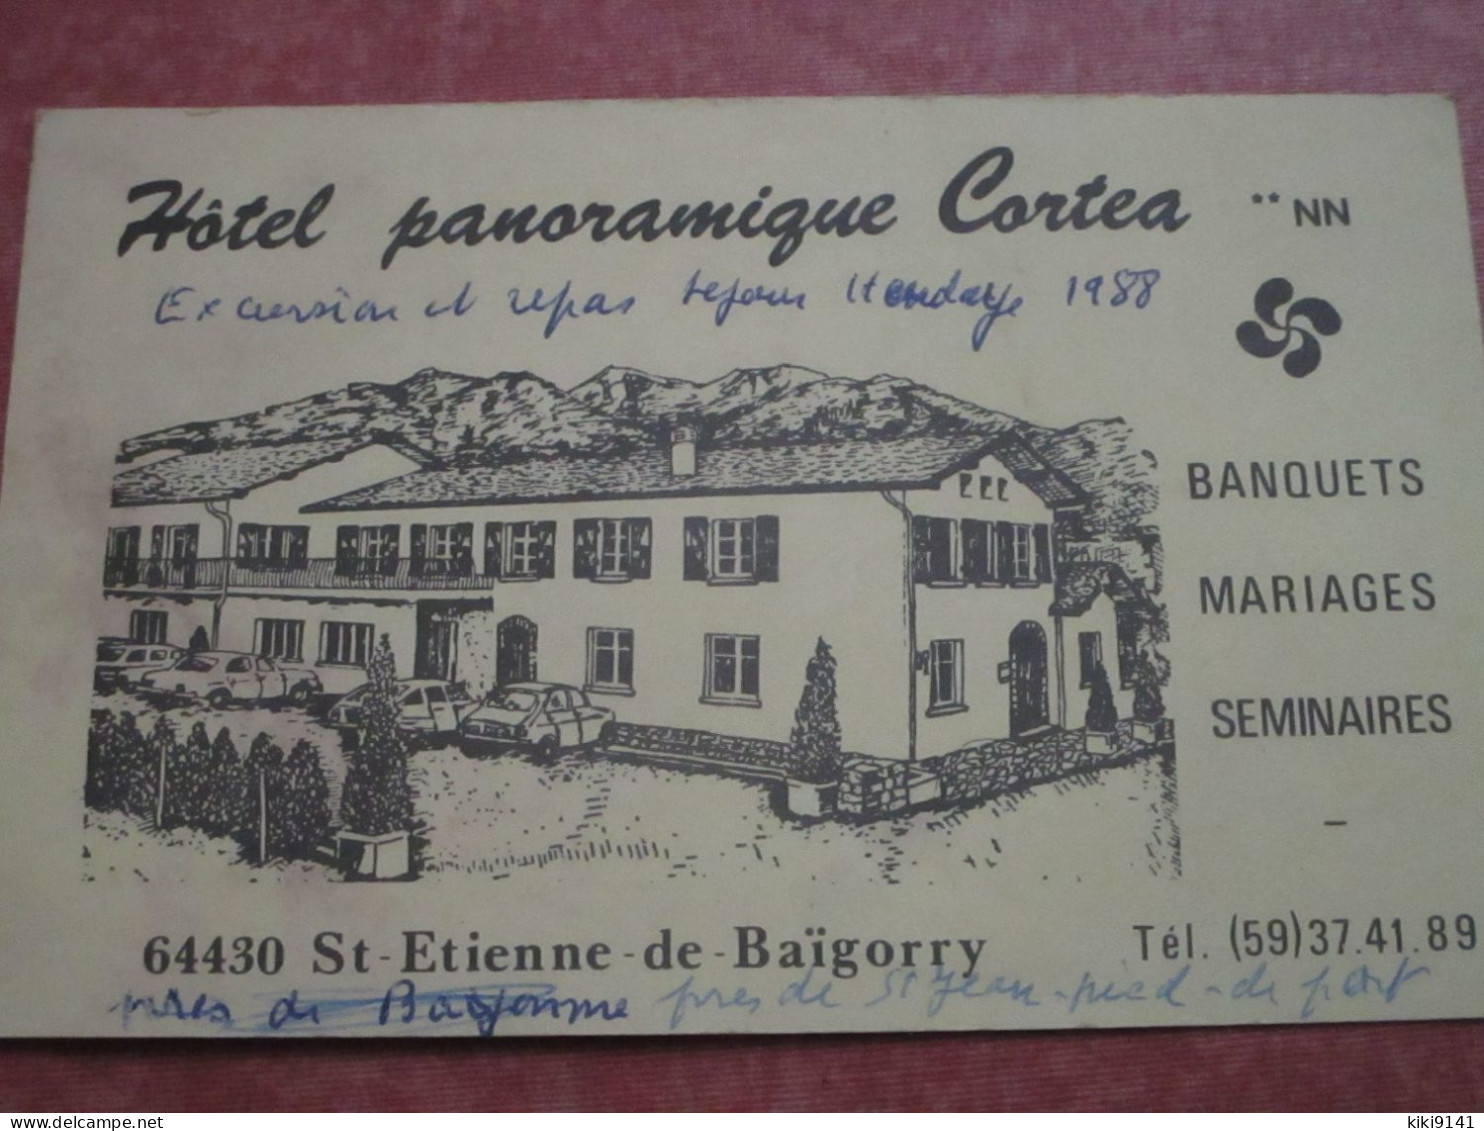 Hôtel Panoramique Cortea - Banquets-Mariages-Séminaires - Saint Etienne De Baigorry